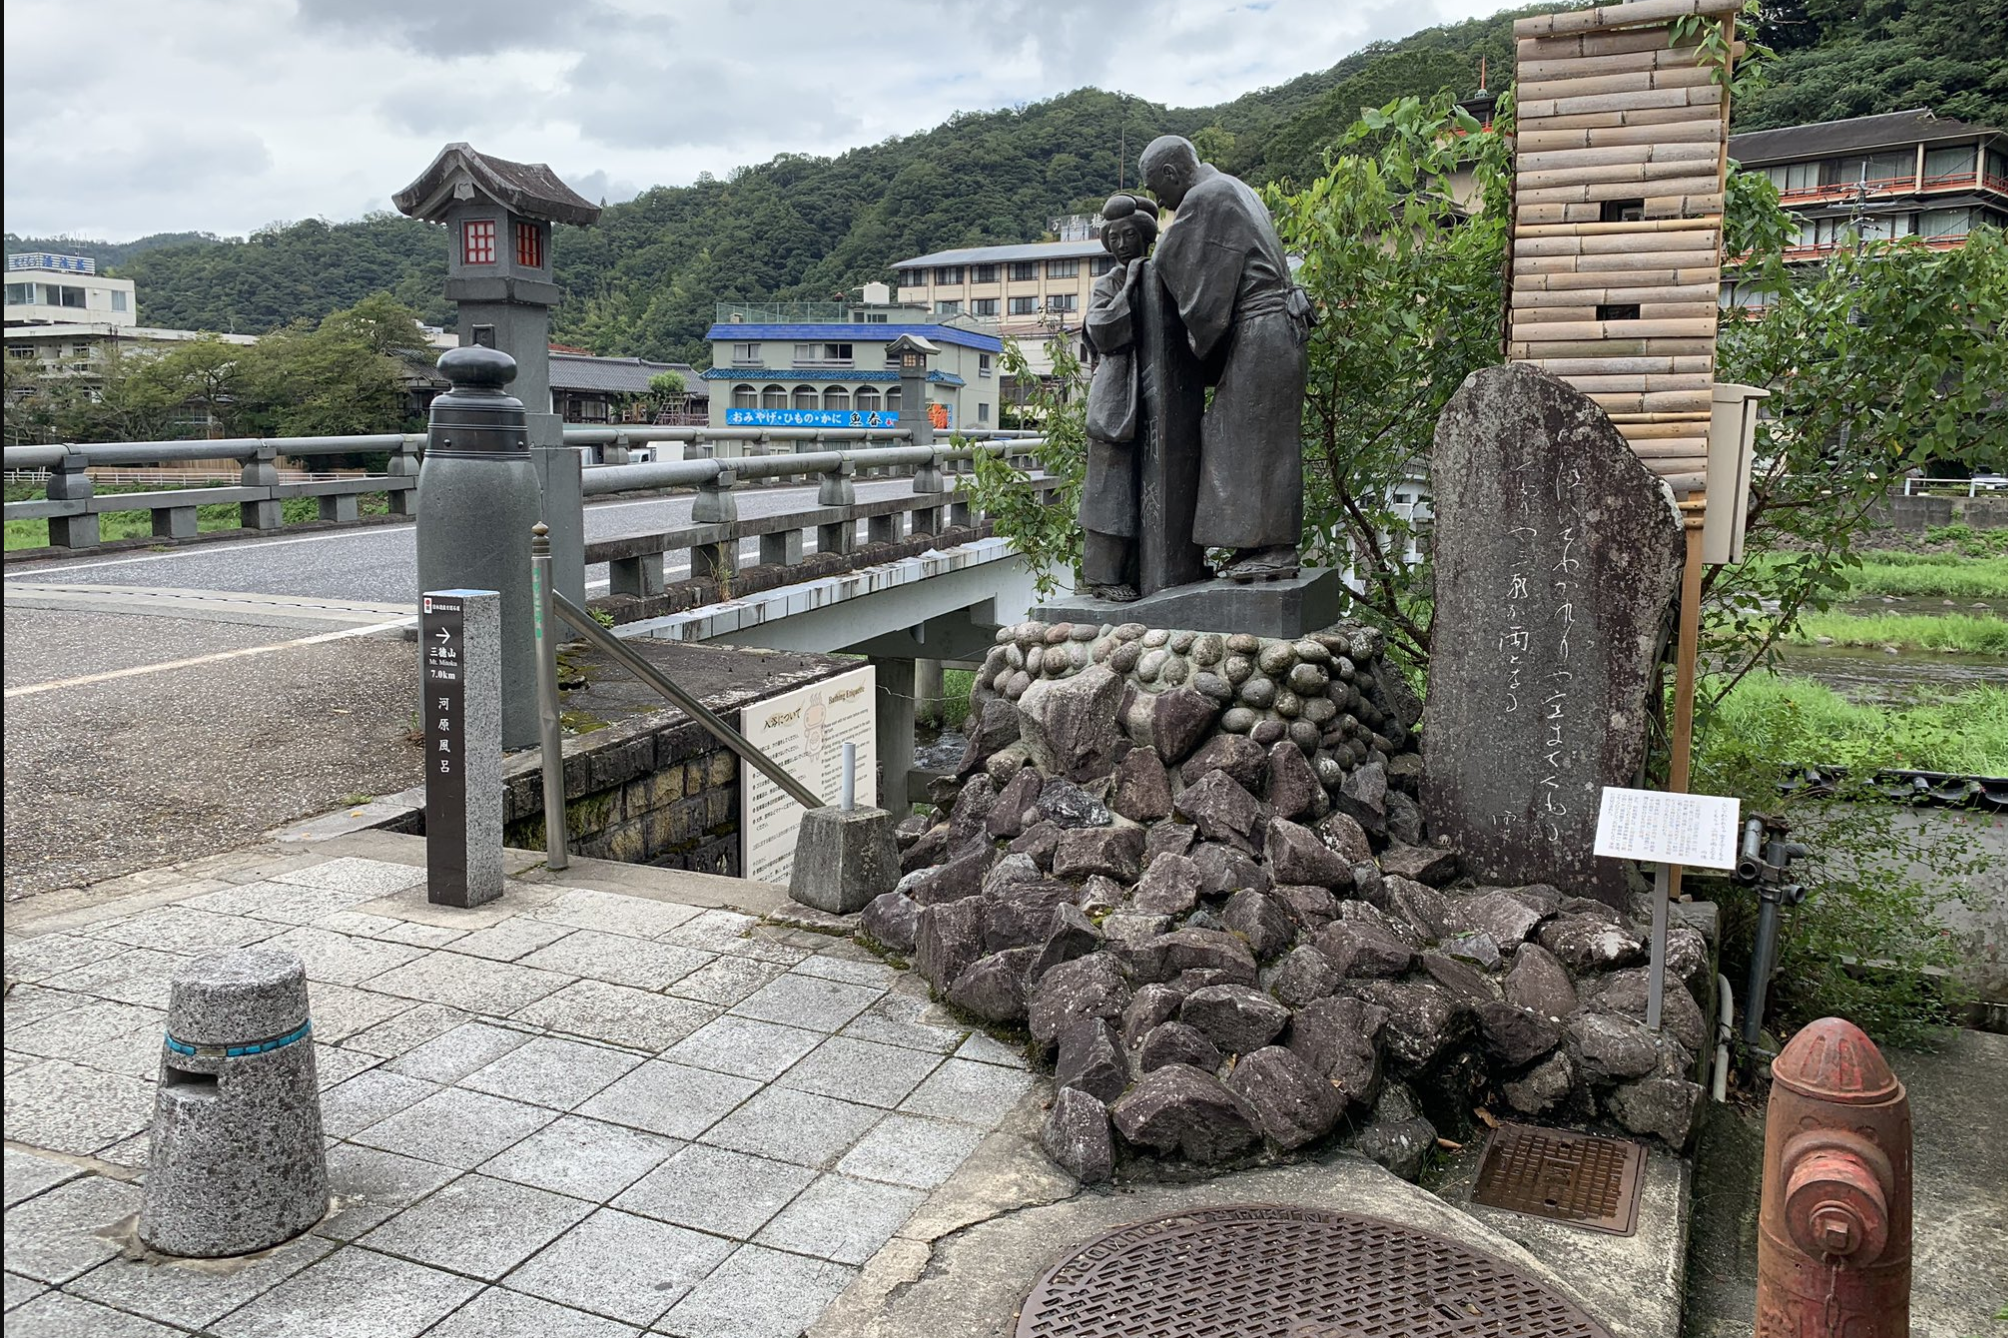 鳥取旅行の際に宇崎ちゃん達が宿泊した温泉街